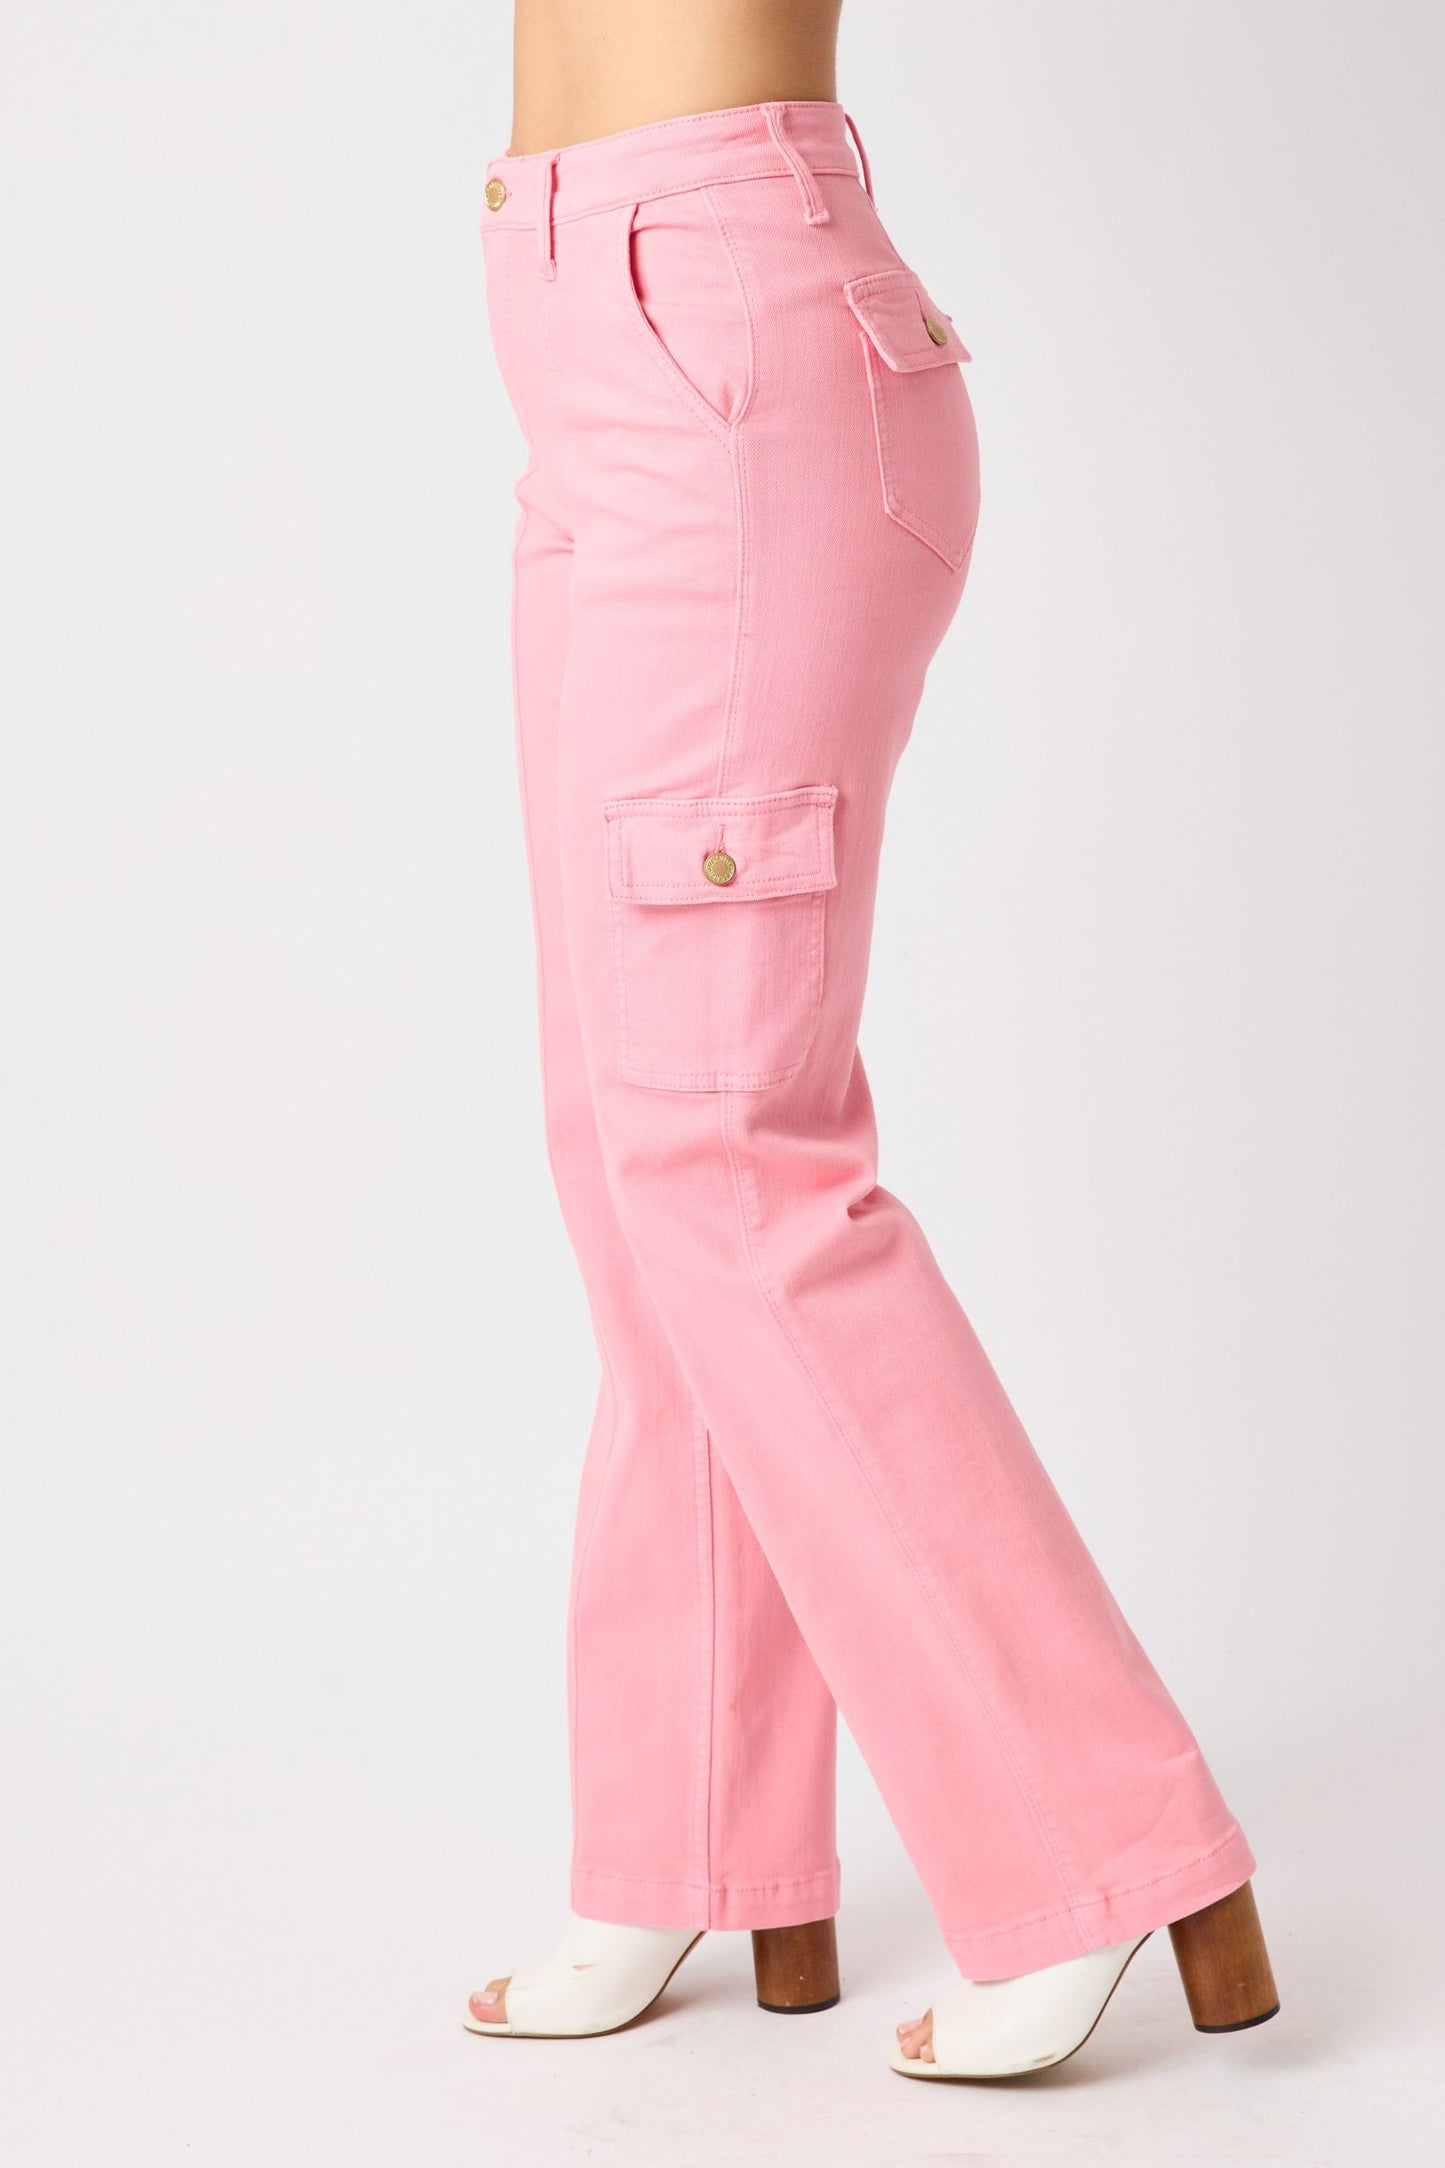 Judy Blue High Waist Pink Cargo Straight Leg Jeans